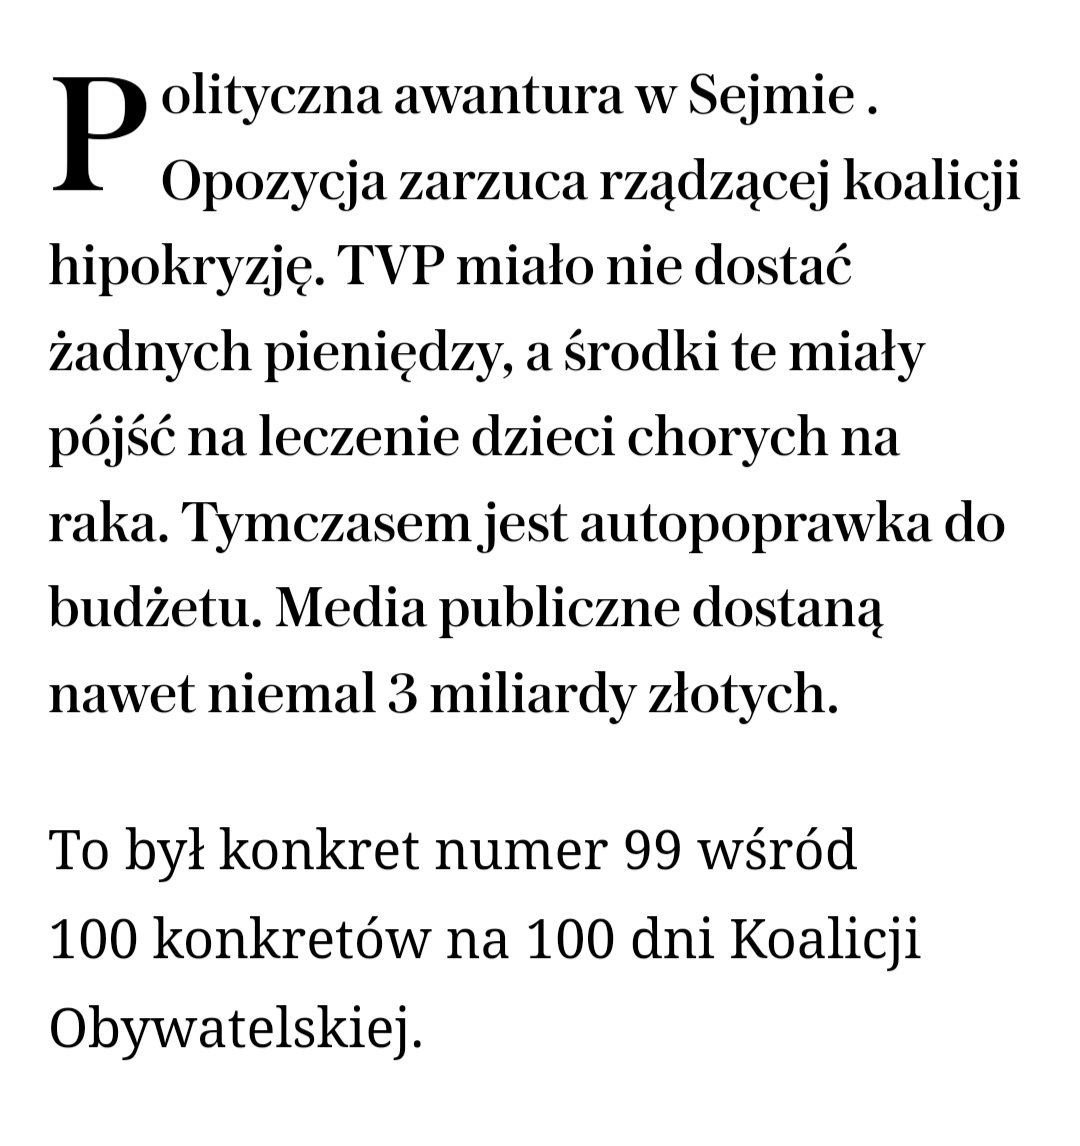 Trzy miliardy złotych na rządową propagandę w mediach! Największy oszust w Polsce, Donald Tusk nie przekazał pieniędzy na onkologię dziecięcą. Przekazał za to na przejęte w sposób nielegalny media aż o 500 tyś więcej niż poprzedni rząd. #MafiaTuska  
 
twitter.com/Renata_Grochal…